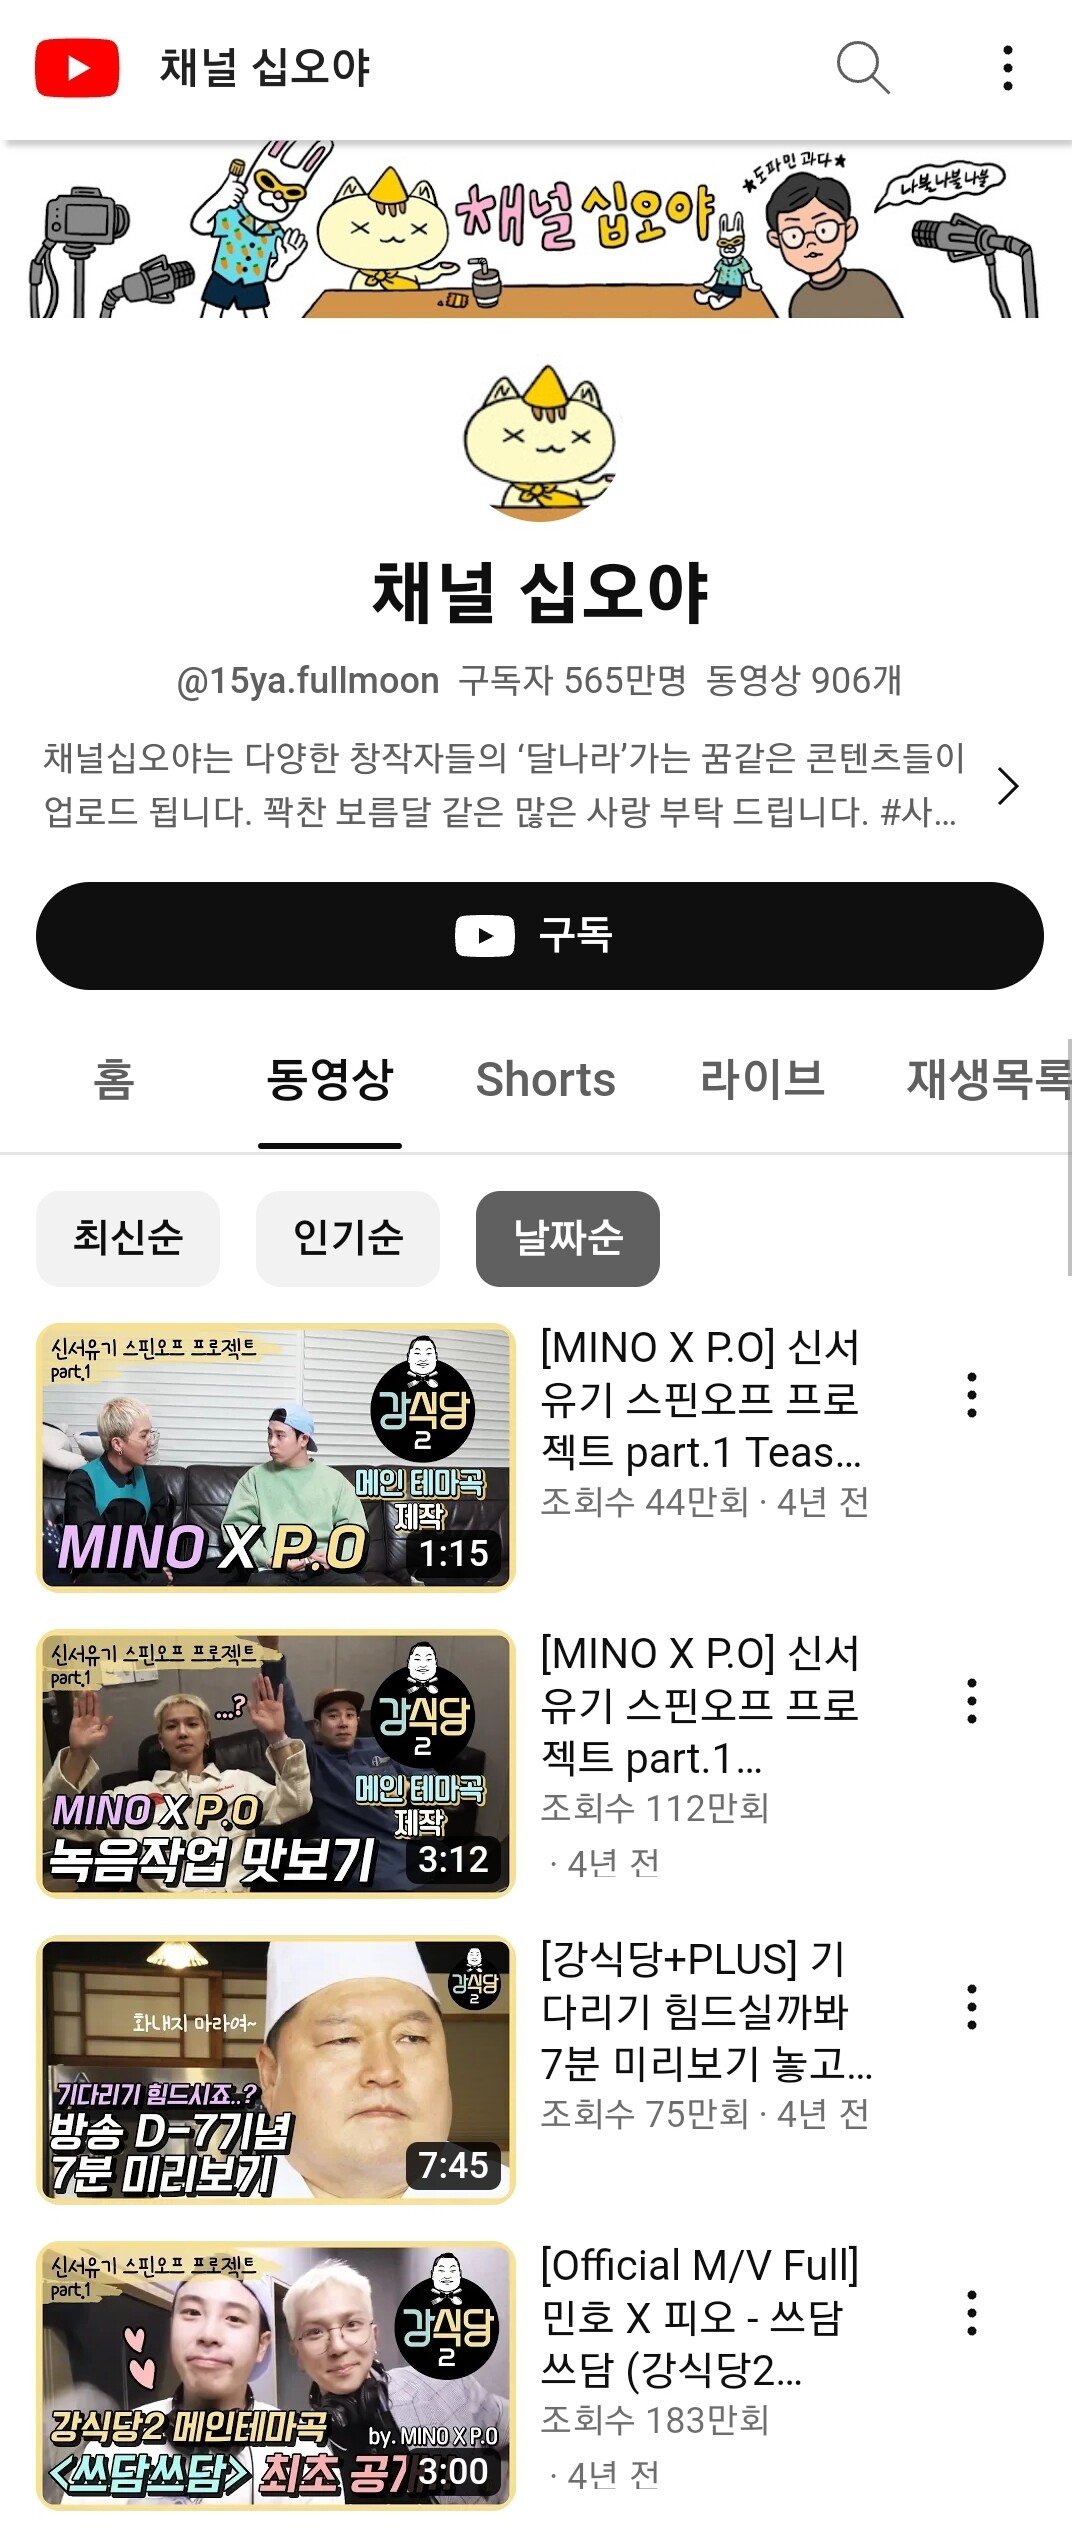 4er.jpg 나영석pd 구독자 565만 유튜브 채널 "십오야"의 시작